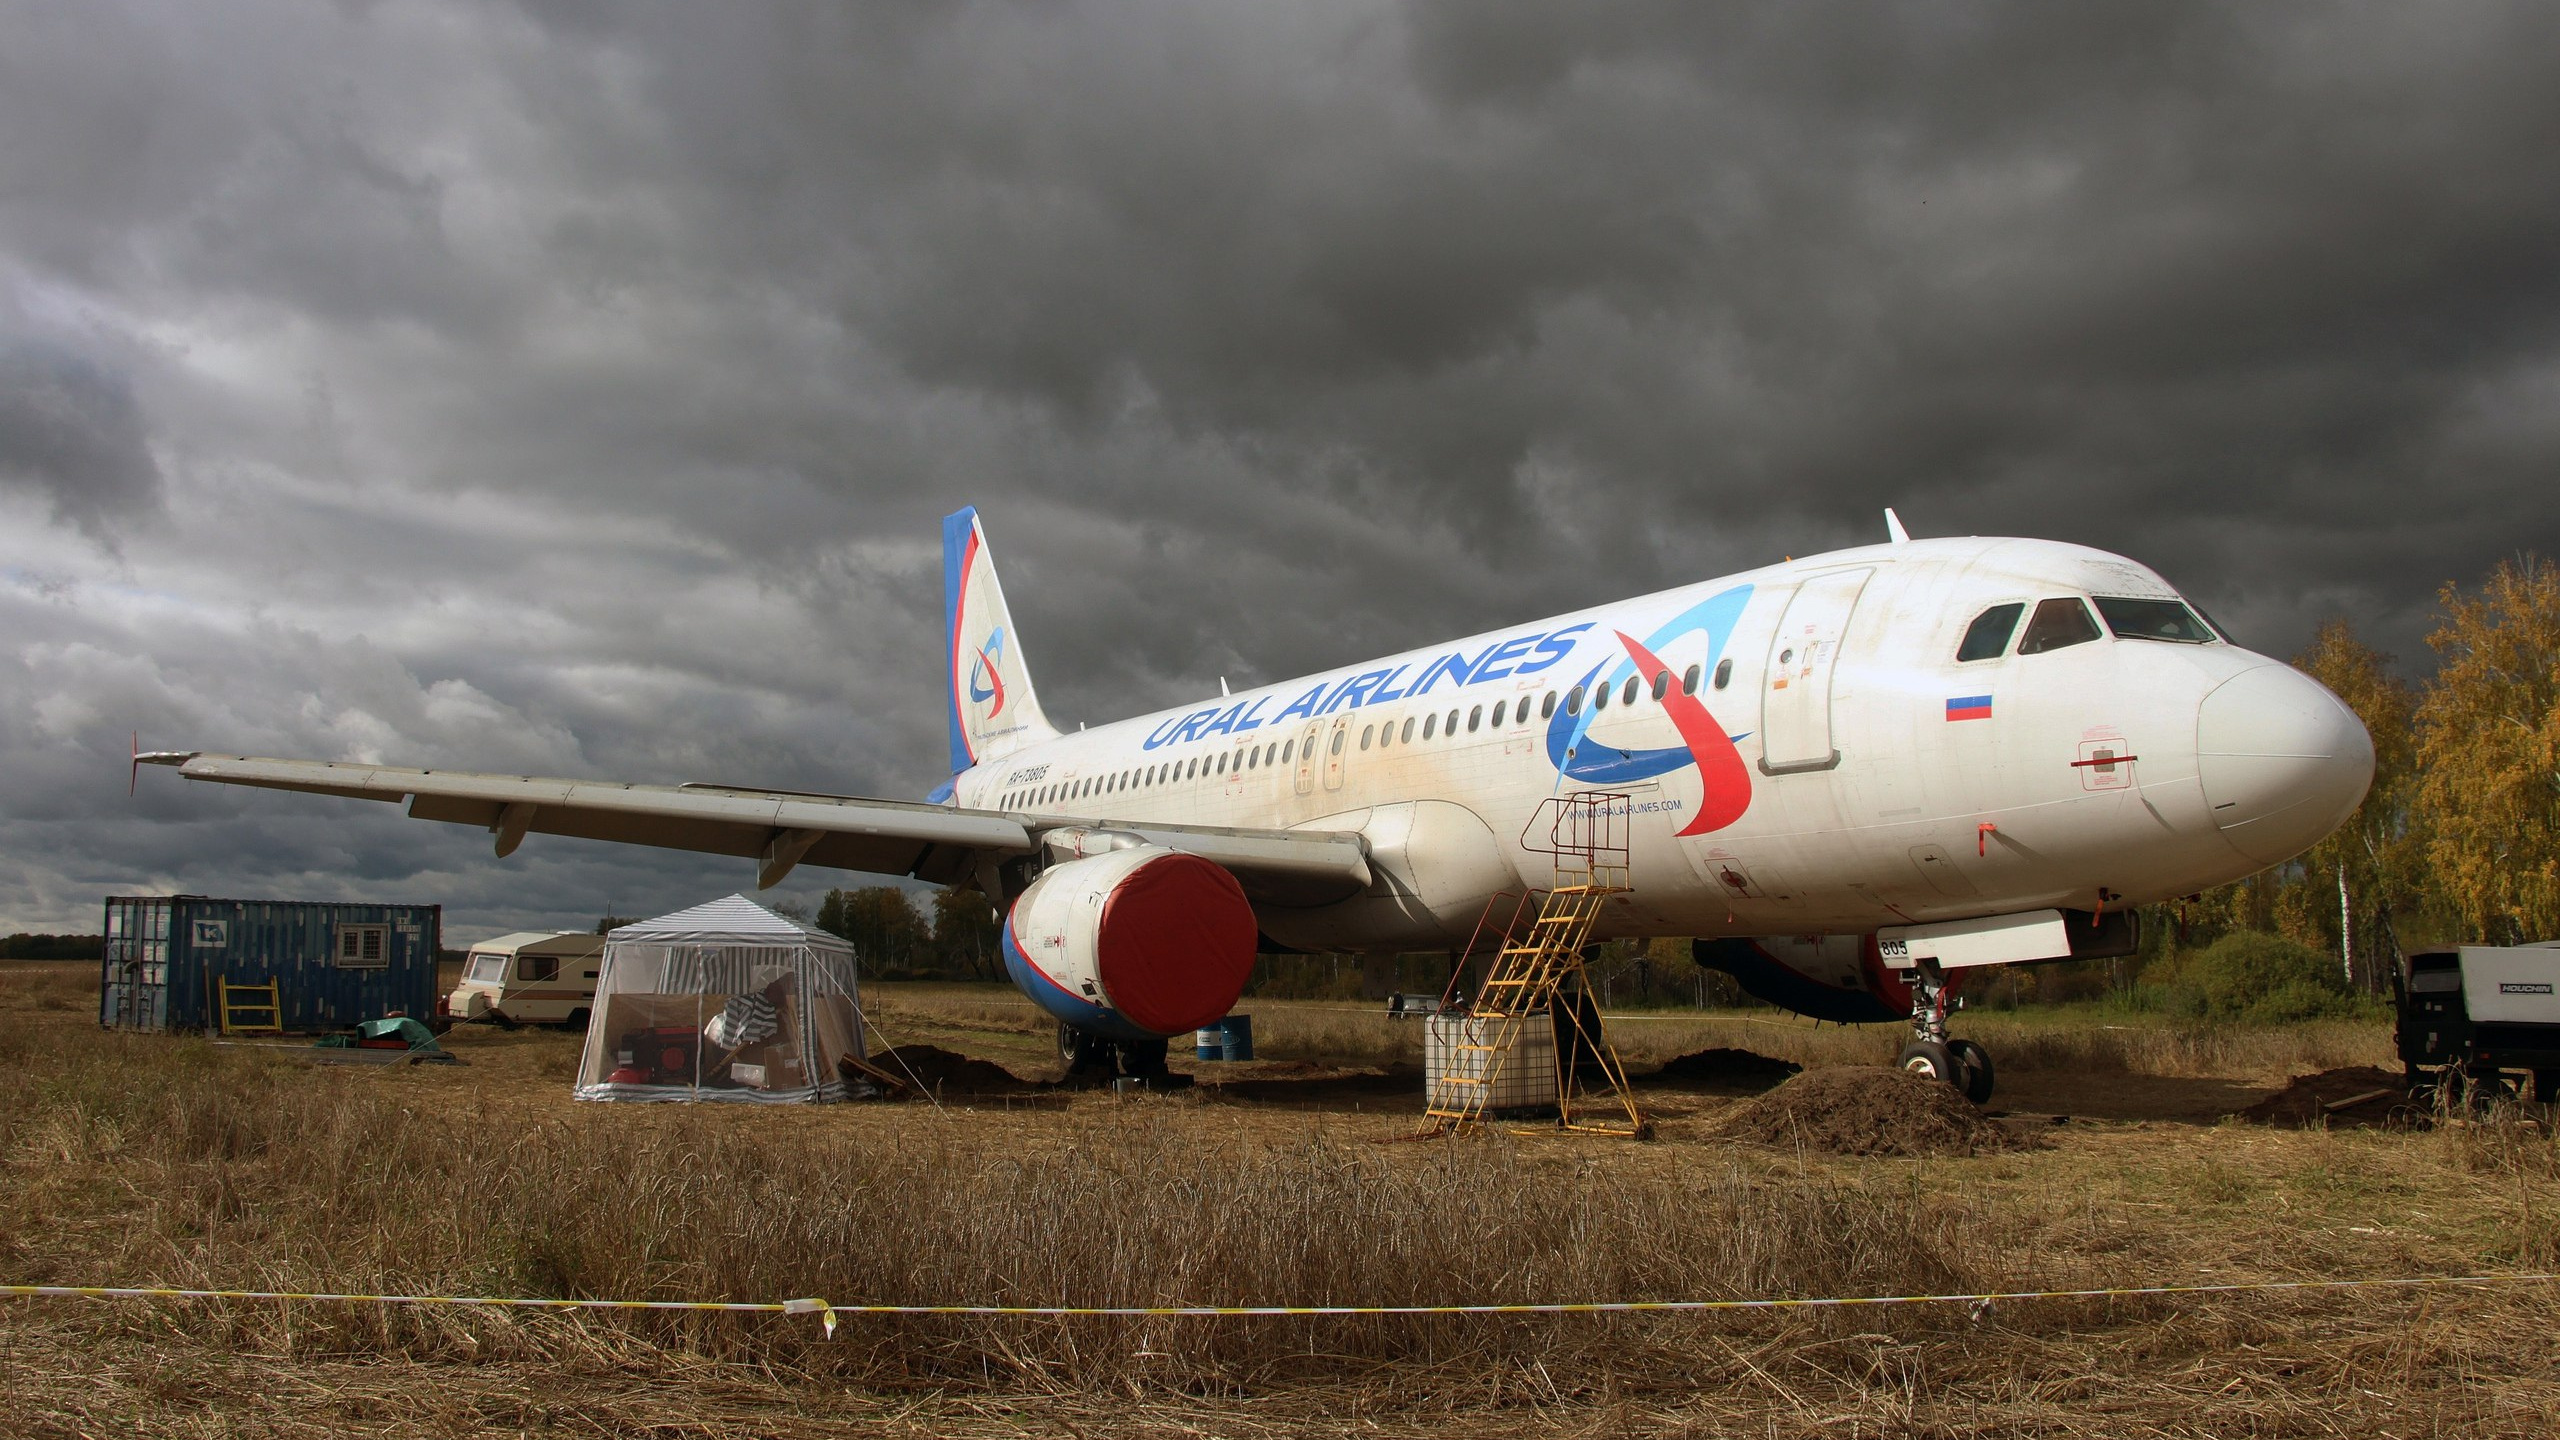 Как чинят самолет, который экстренно приземлился в пшеничном поле в Новосибирской области, — фото с места работ